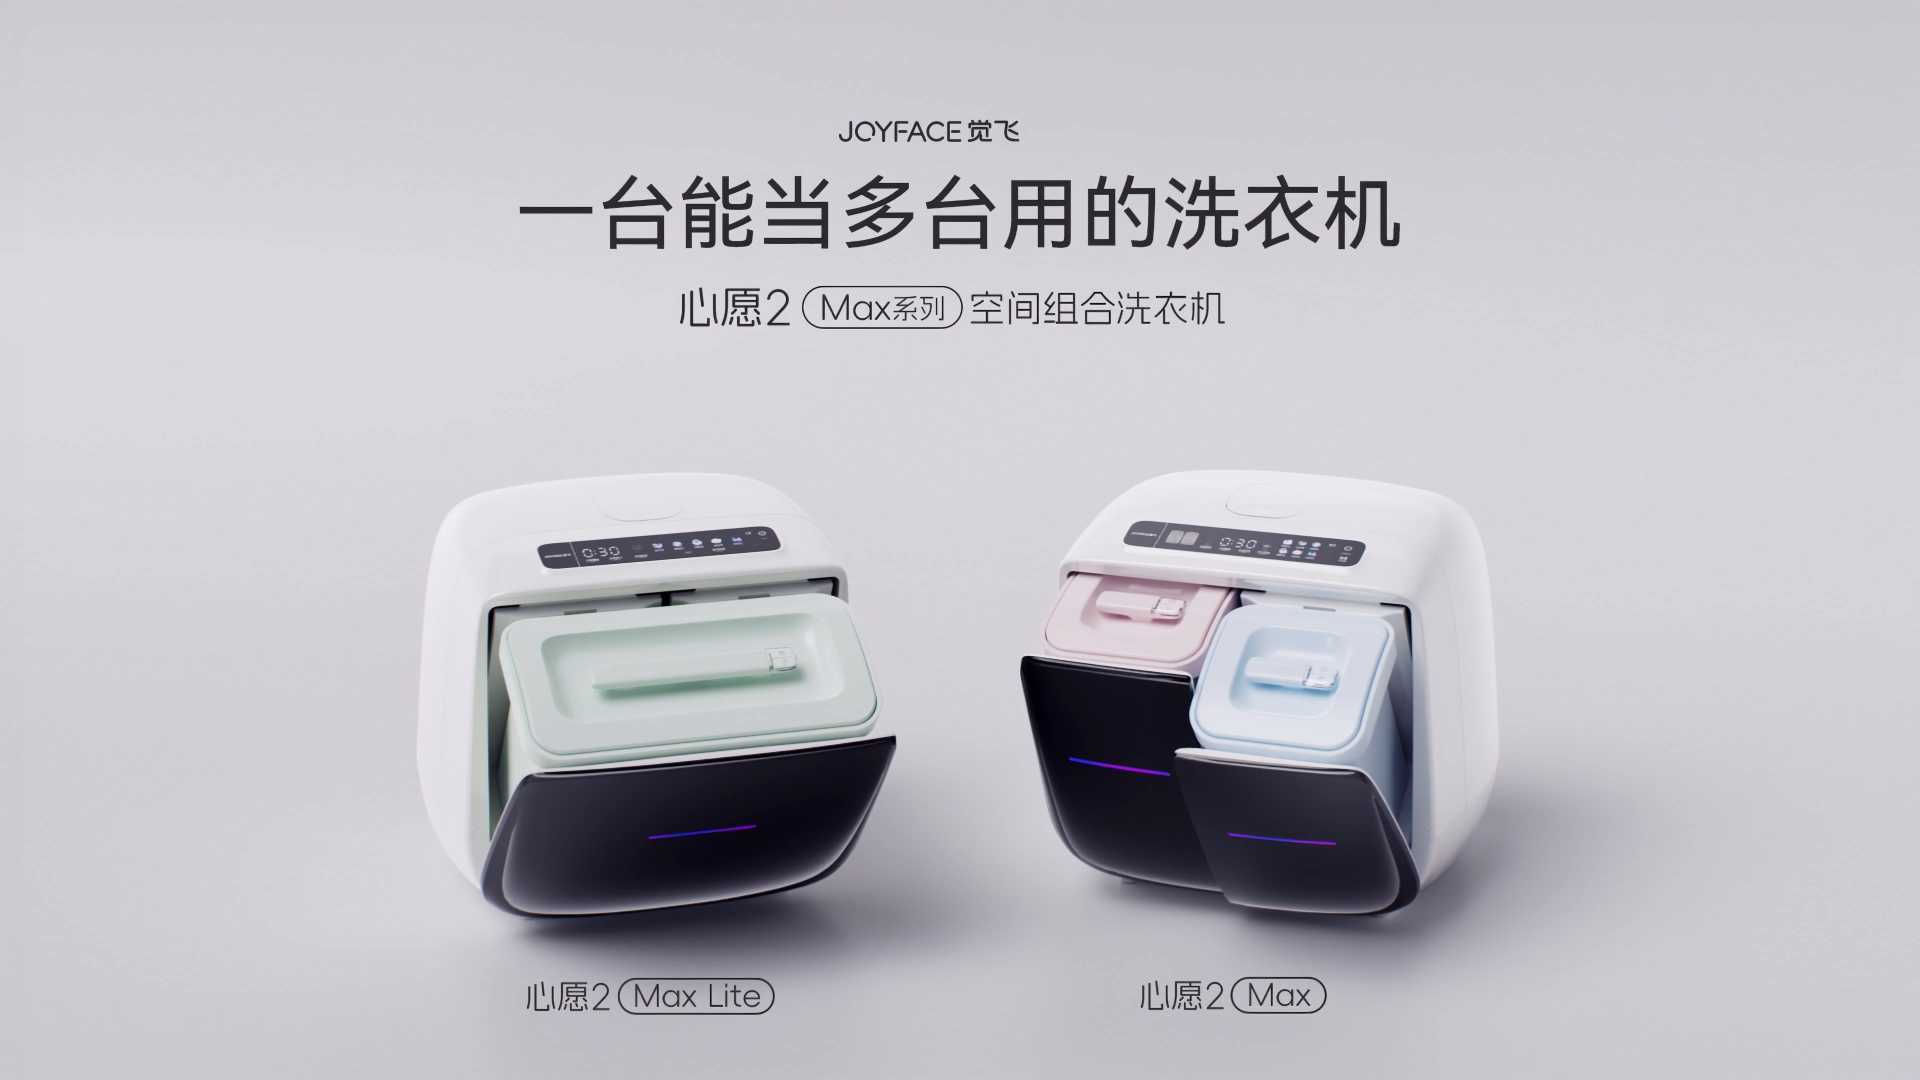 觉飞 | 心愿2 Max系列空间组合洗衣机发布视频 — 一台能当多台用的洗衣机